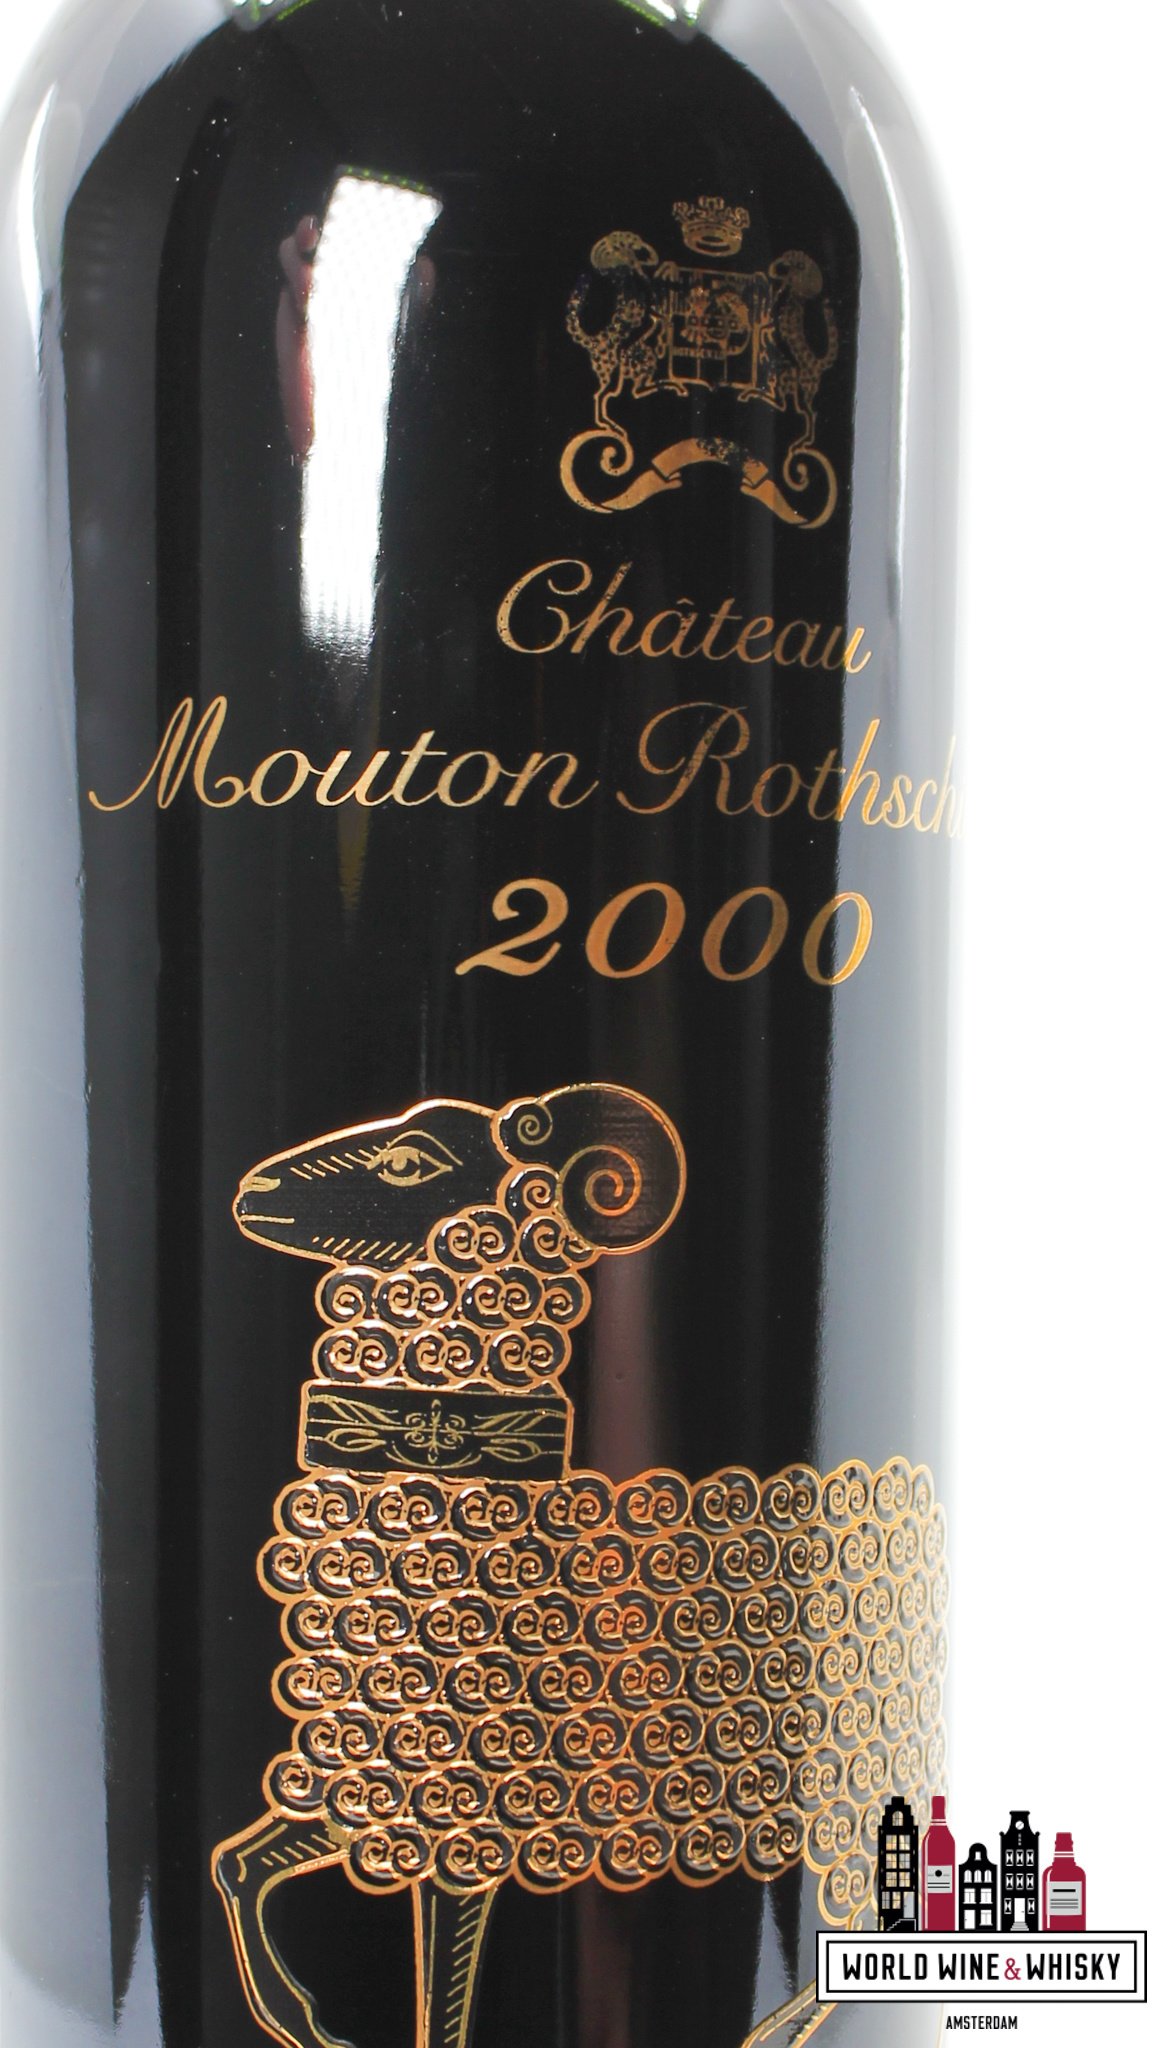 Mouton Rothschild Chateau Mouton Rothschild 2000